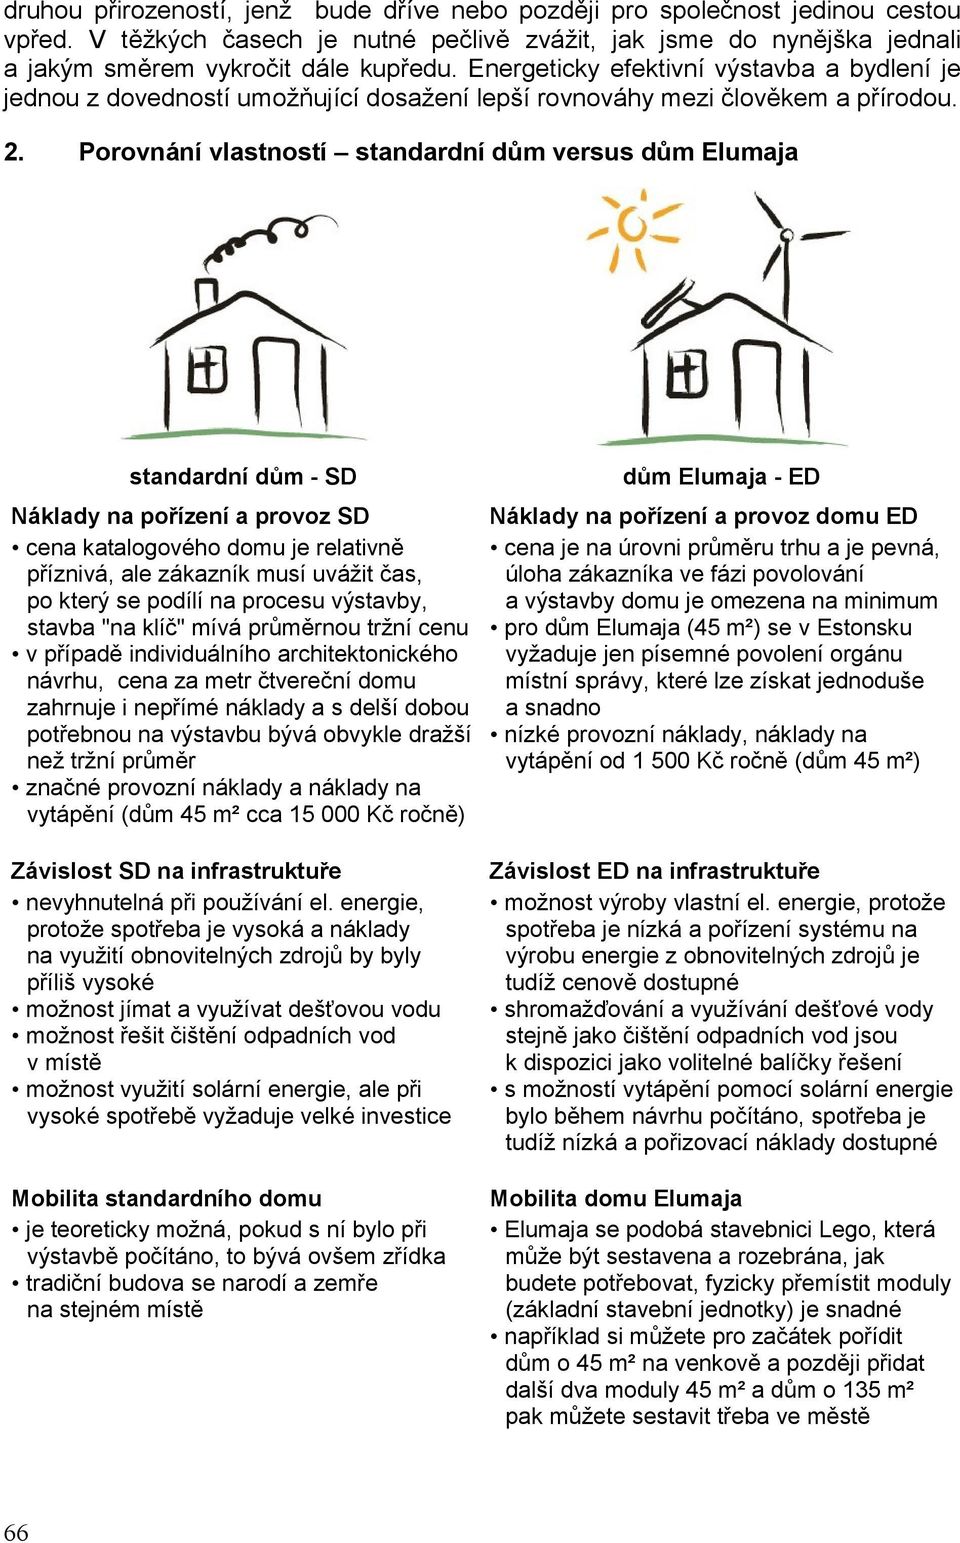 Porovnání vlastností standardní dům versus dům Elumaja standardní dům - SD Náklady na pořízení a provoz SD cena katalogového domu je relativně příznivá, ale zákazník musí uvážit čas, po který se